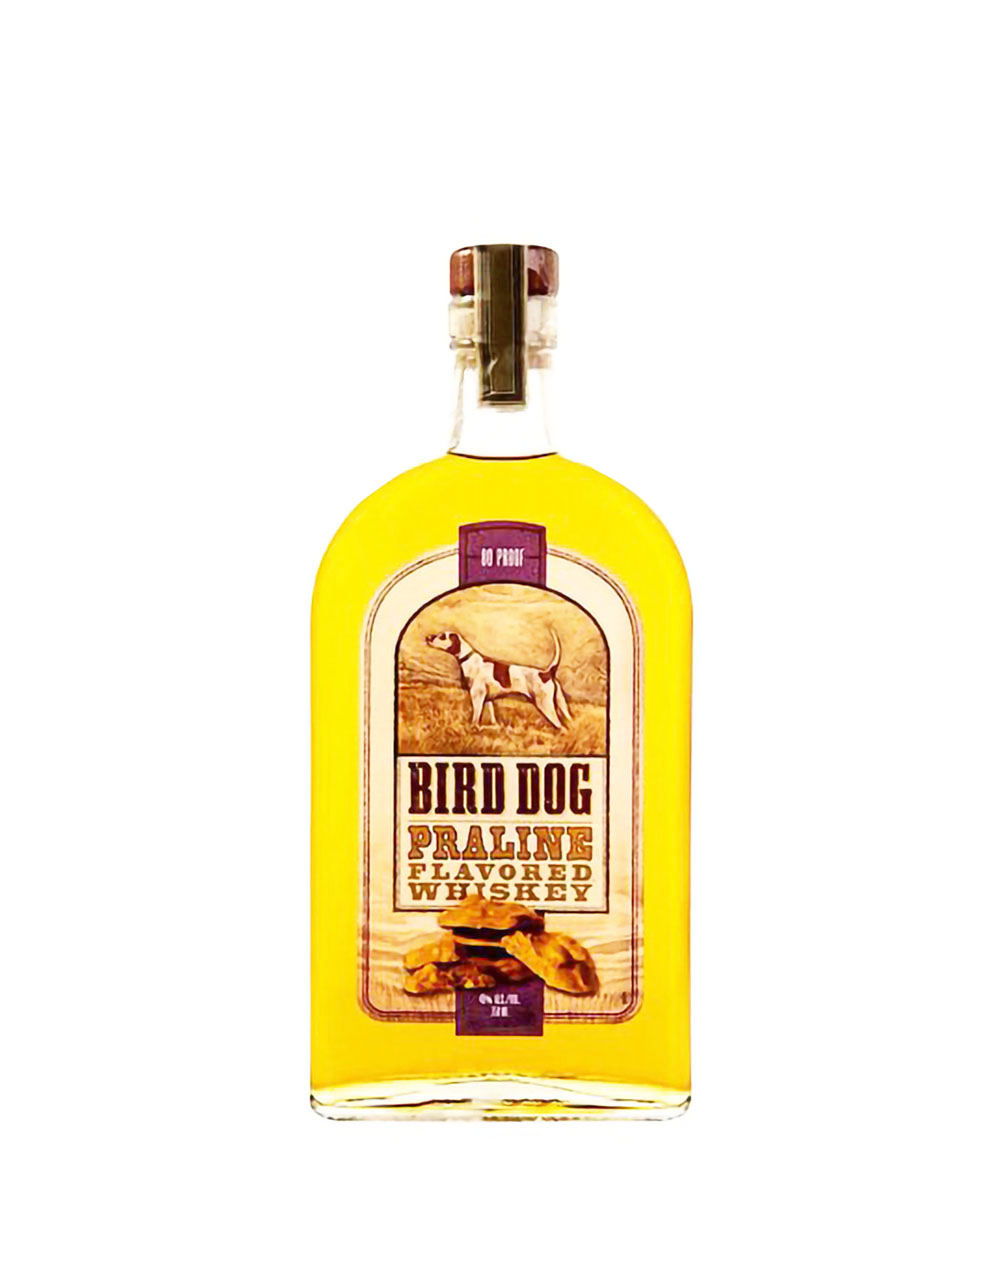 Bird Dog Praline Flavored Whiskey